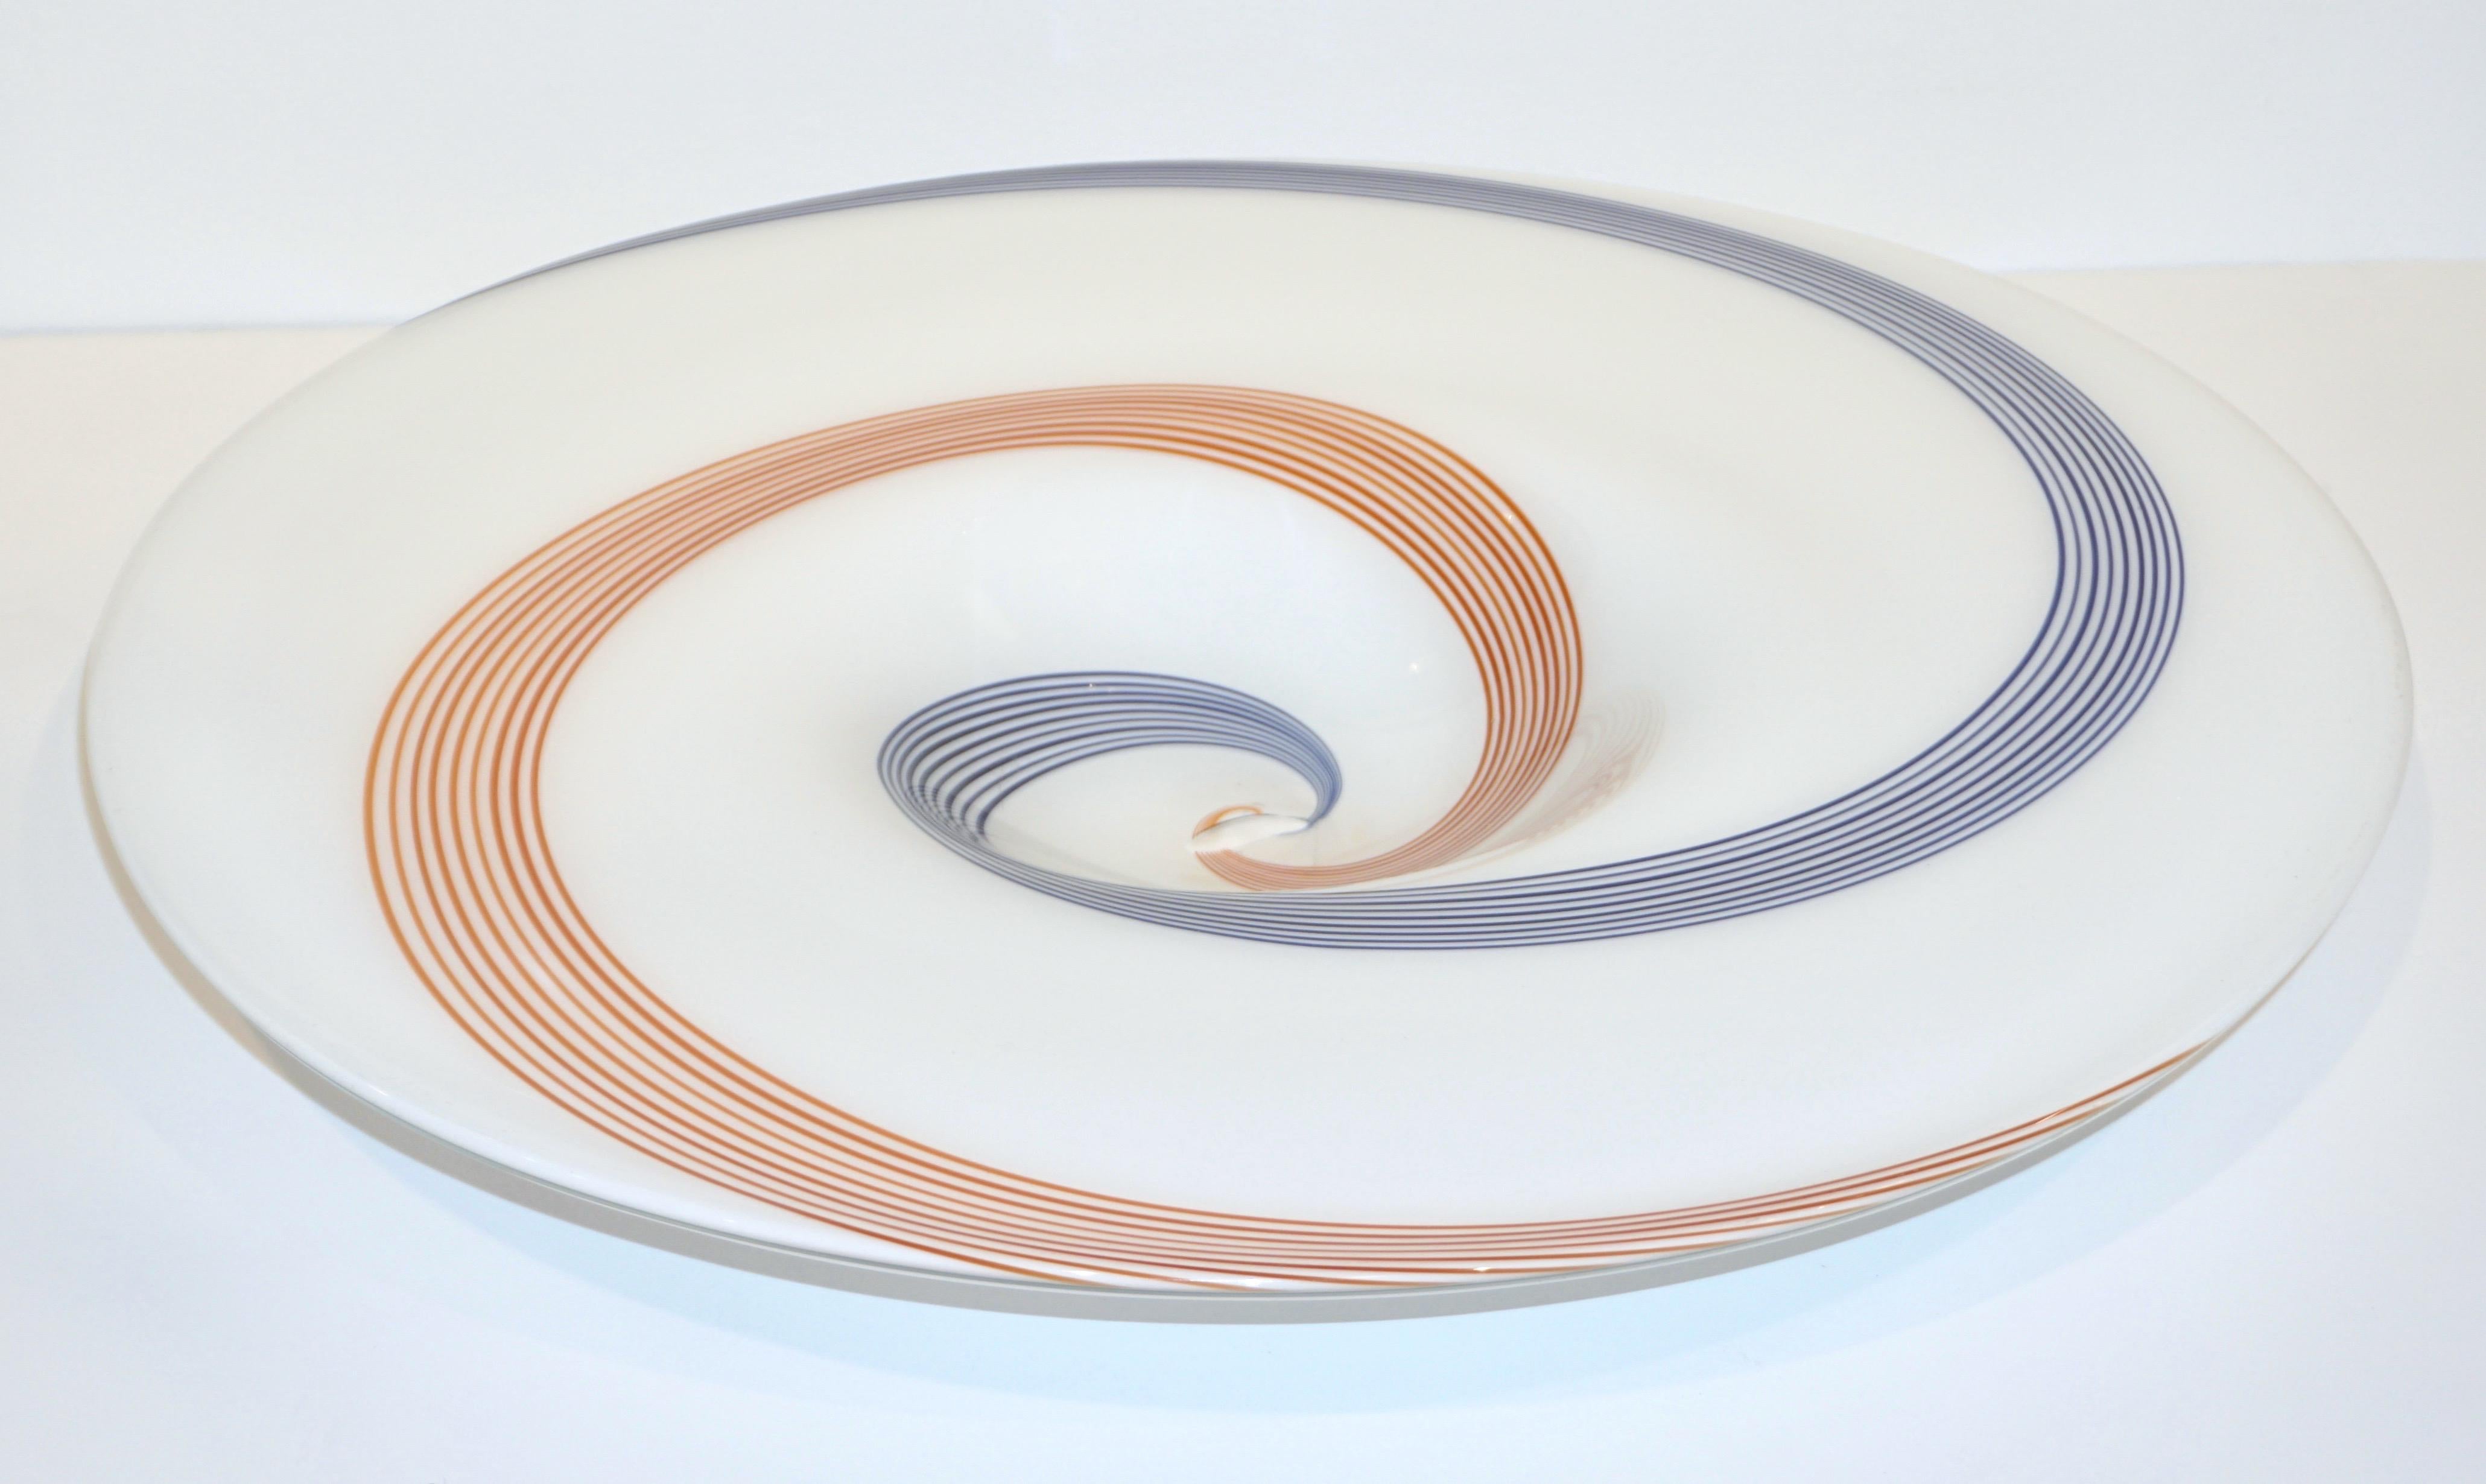 Mid-Century Modern 1960s Italian White Murano Glass Extra Large Platter with Orange & Blue Murrine